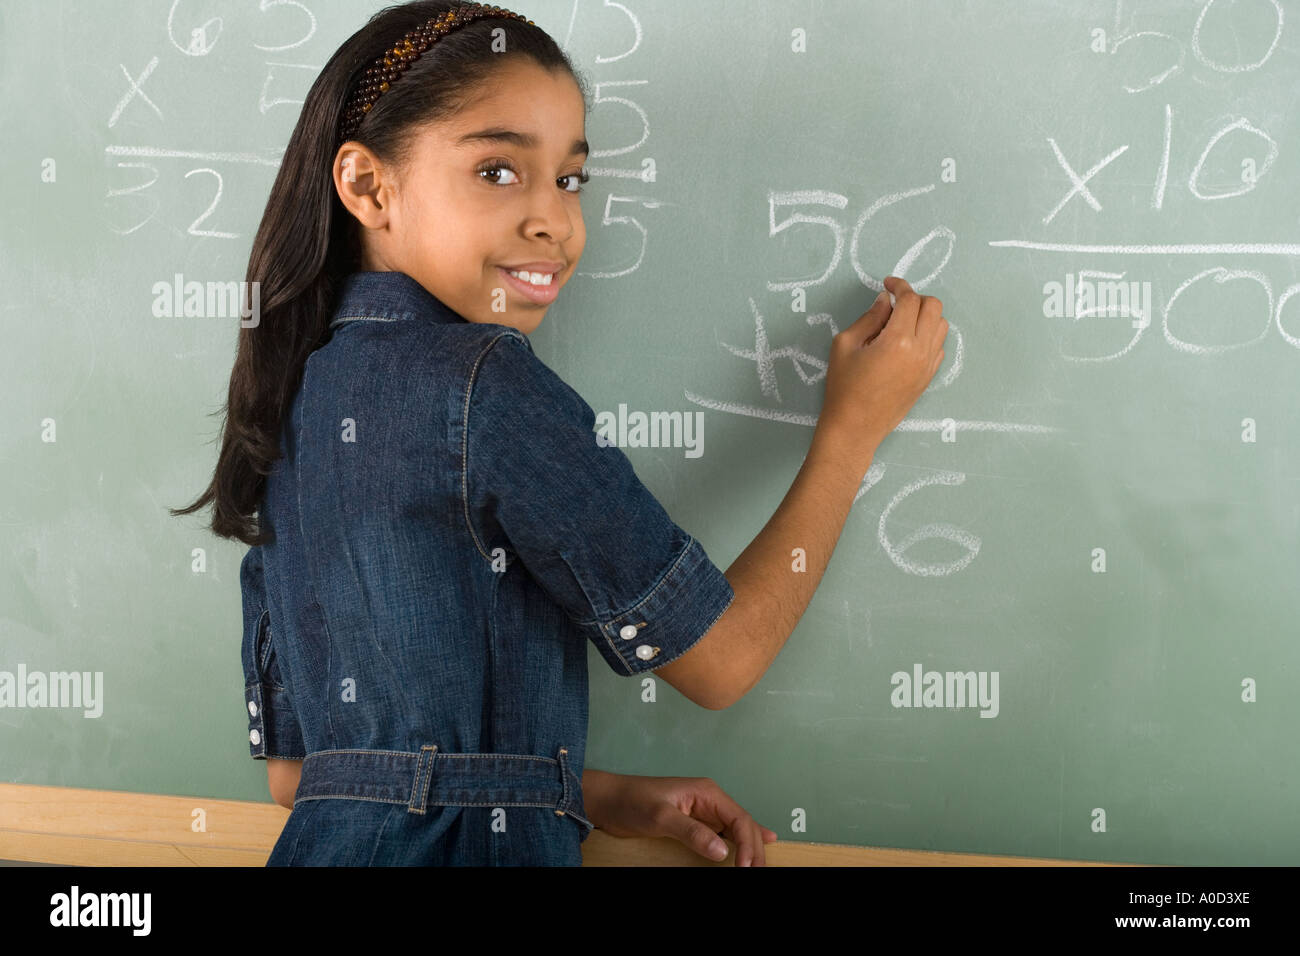 Girl writing on chalkboard Stock Photo